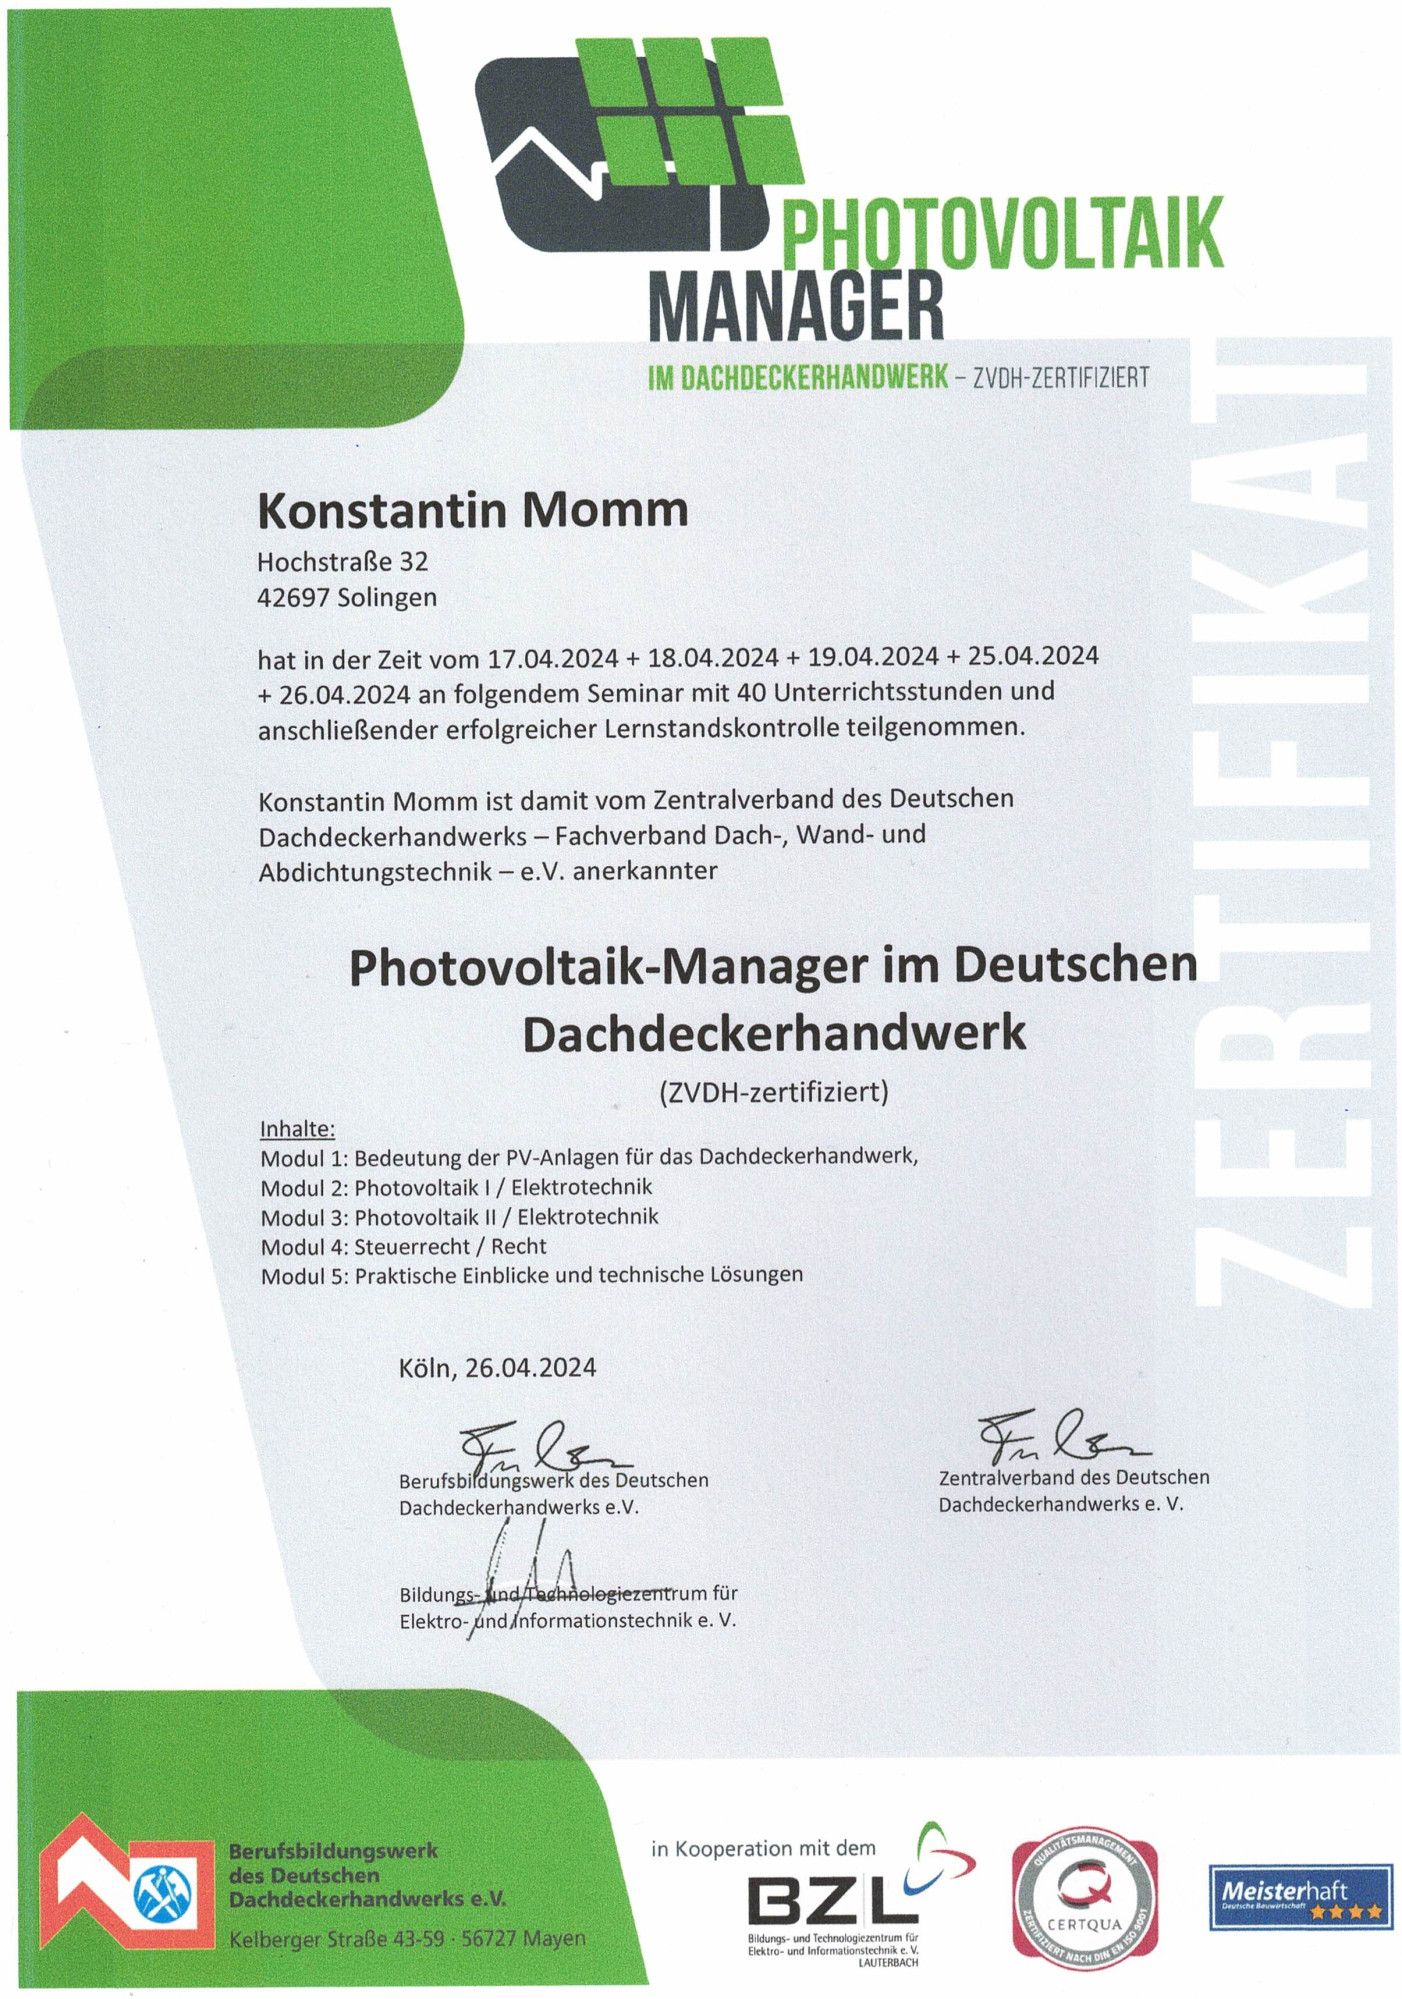 Konstantin Momm ist jetzt Photovoltaik-Manager im Deutschen Dachdeckerhandwerk